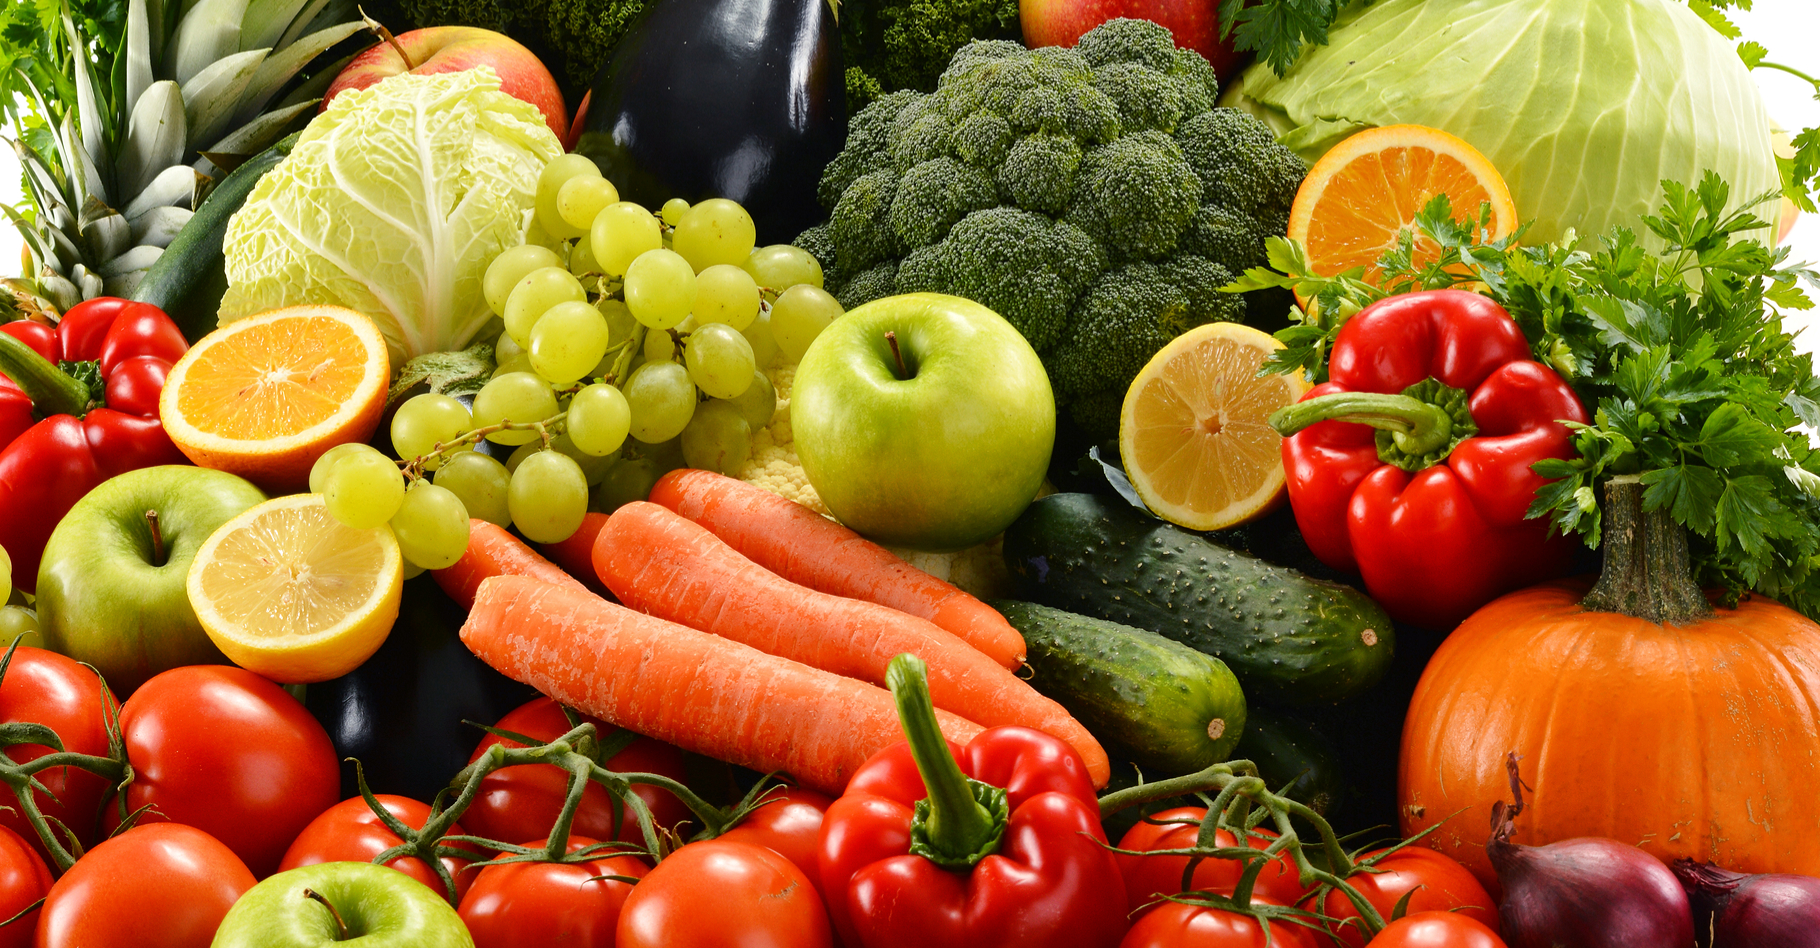 Les fruits et légumes sont des aliments sans gluten. © monticello, Shutterstock